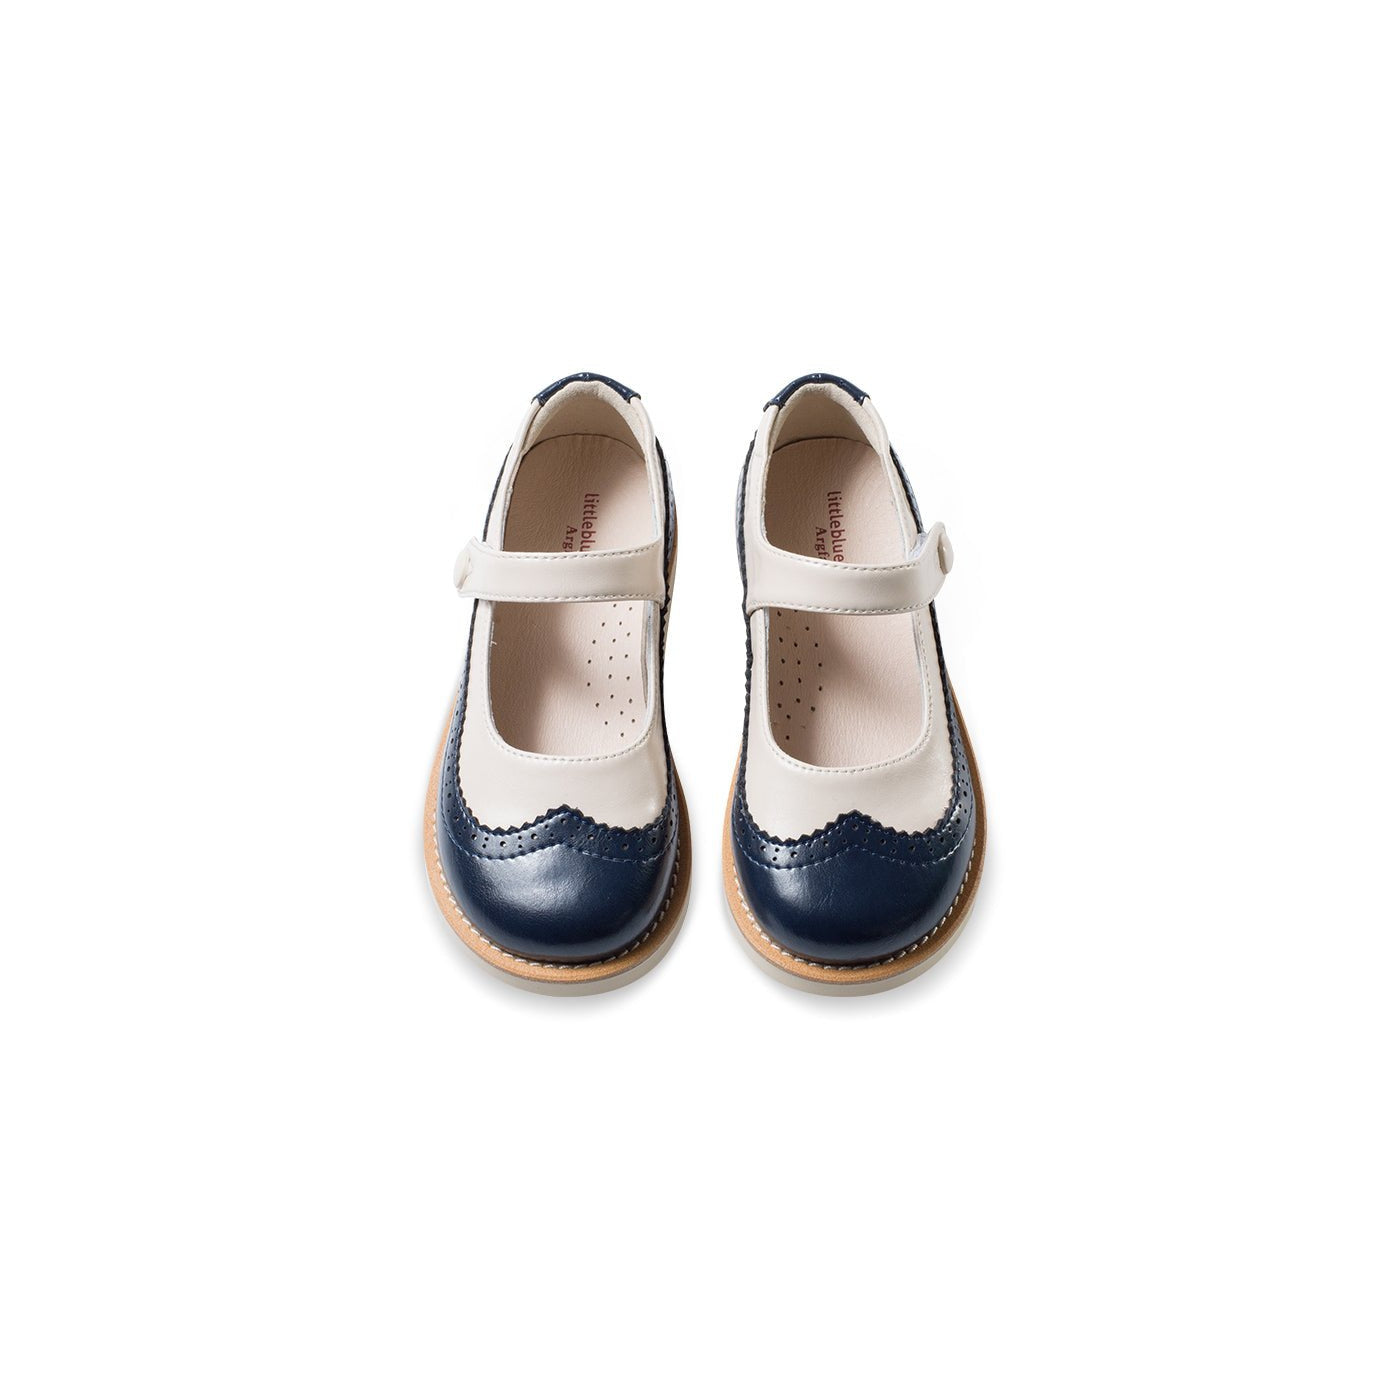 Retro Heart Girl Navy Mary Jane Shoes - 0cm